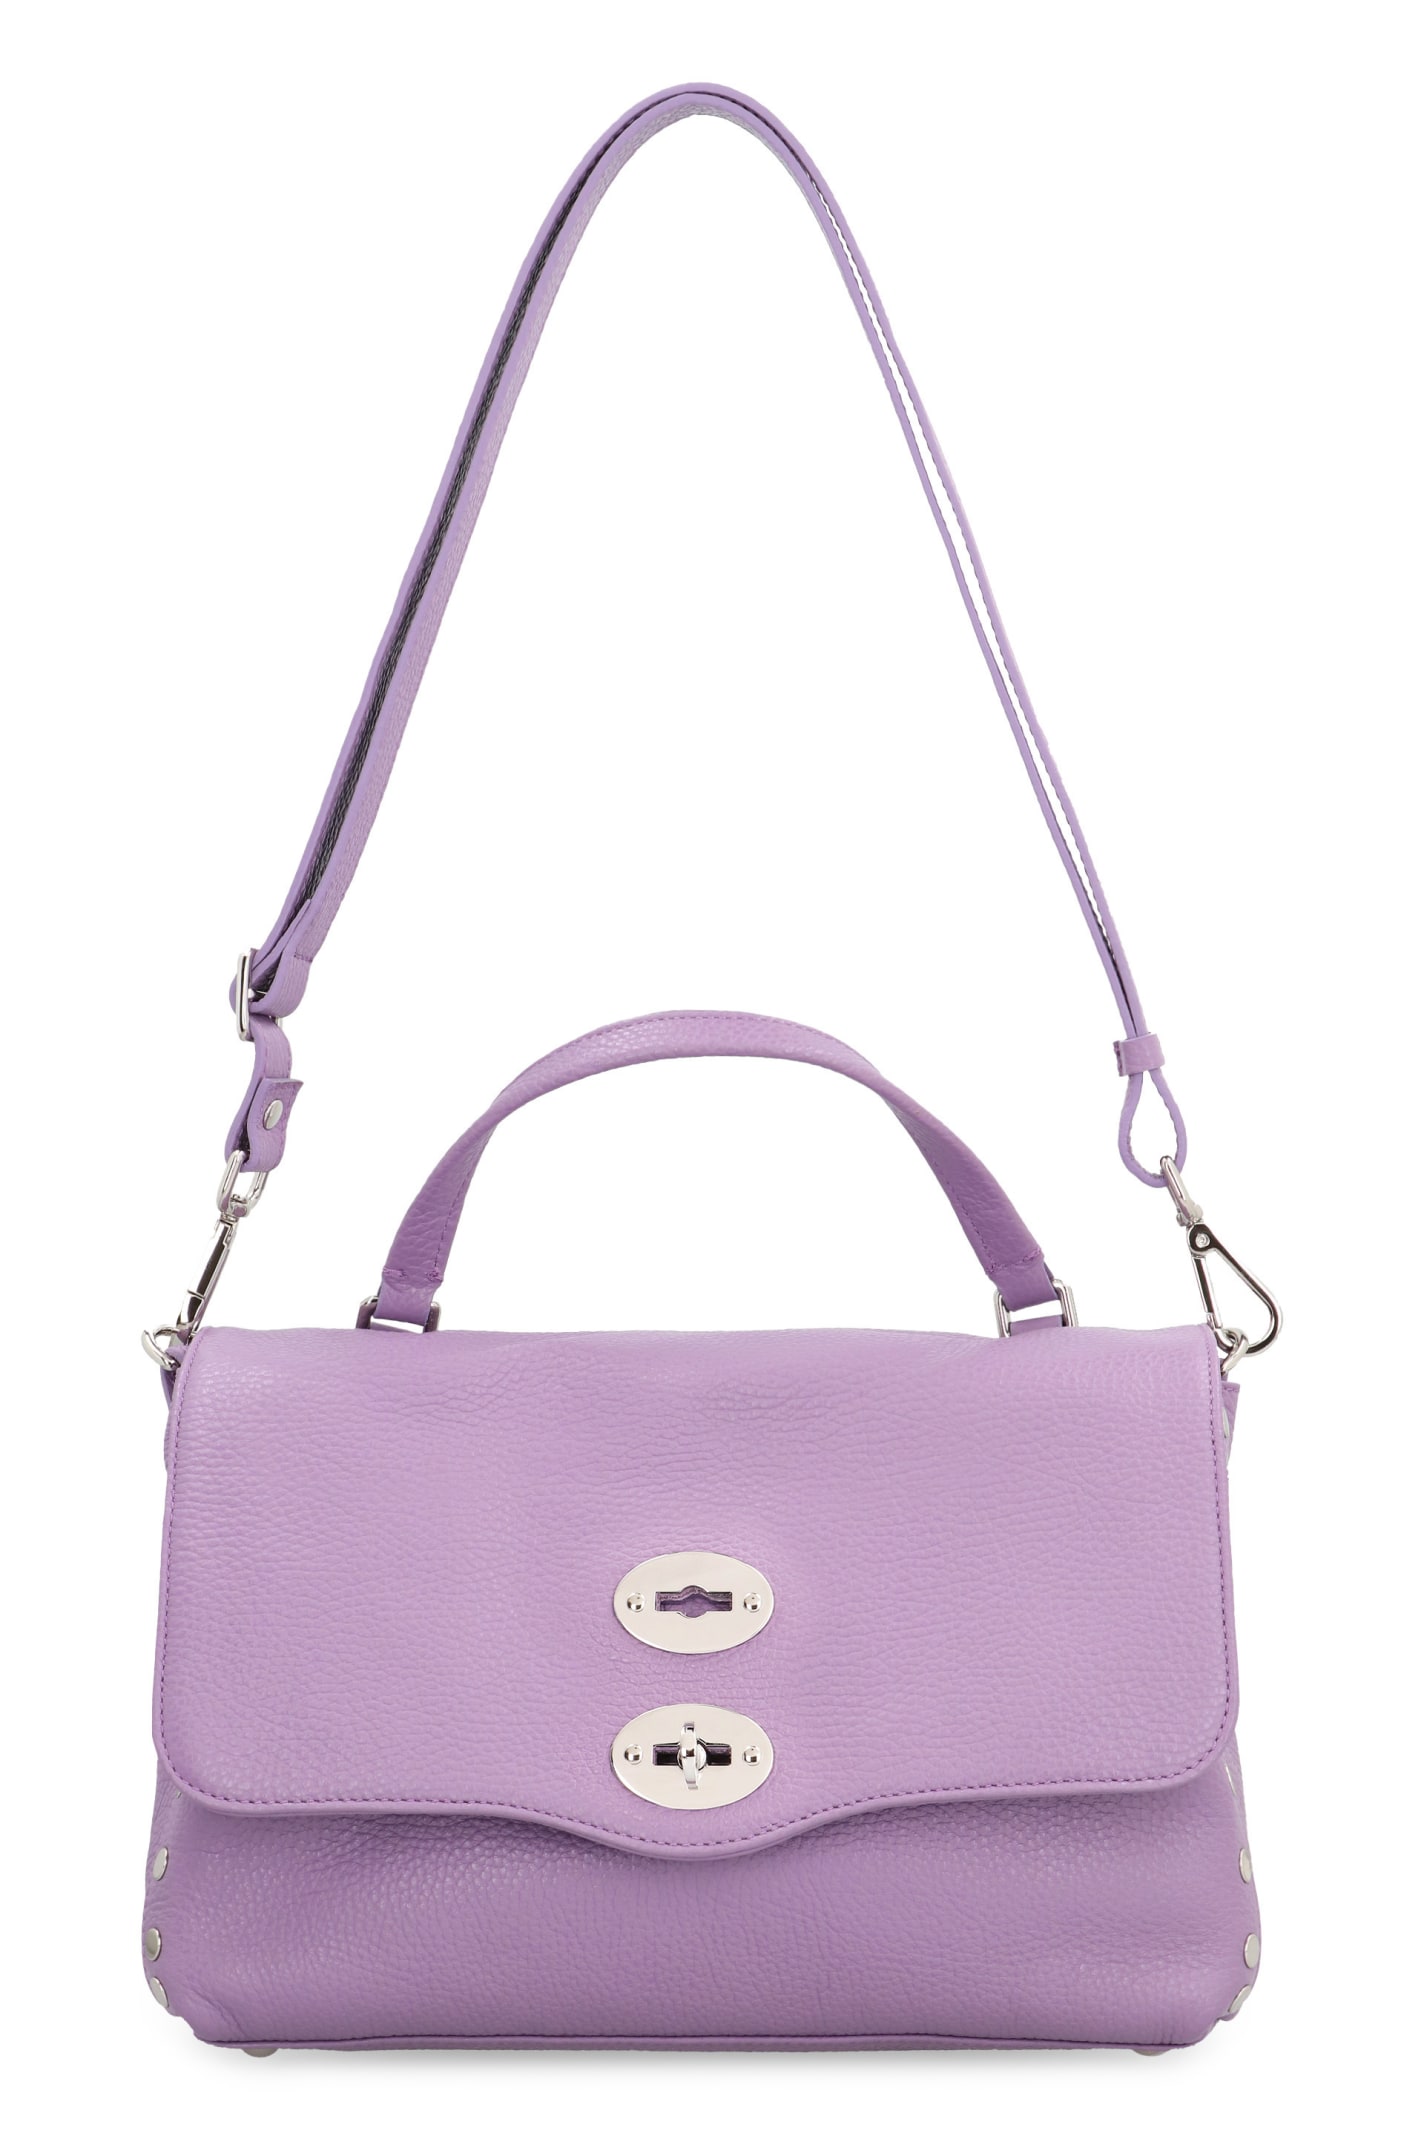 Shop Zanellato Postina S Leather Handbag In Violet Lilla